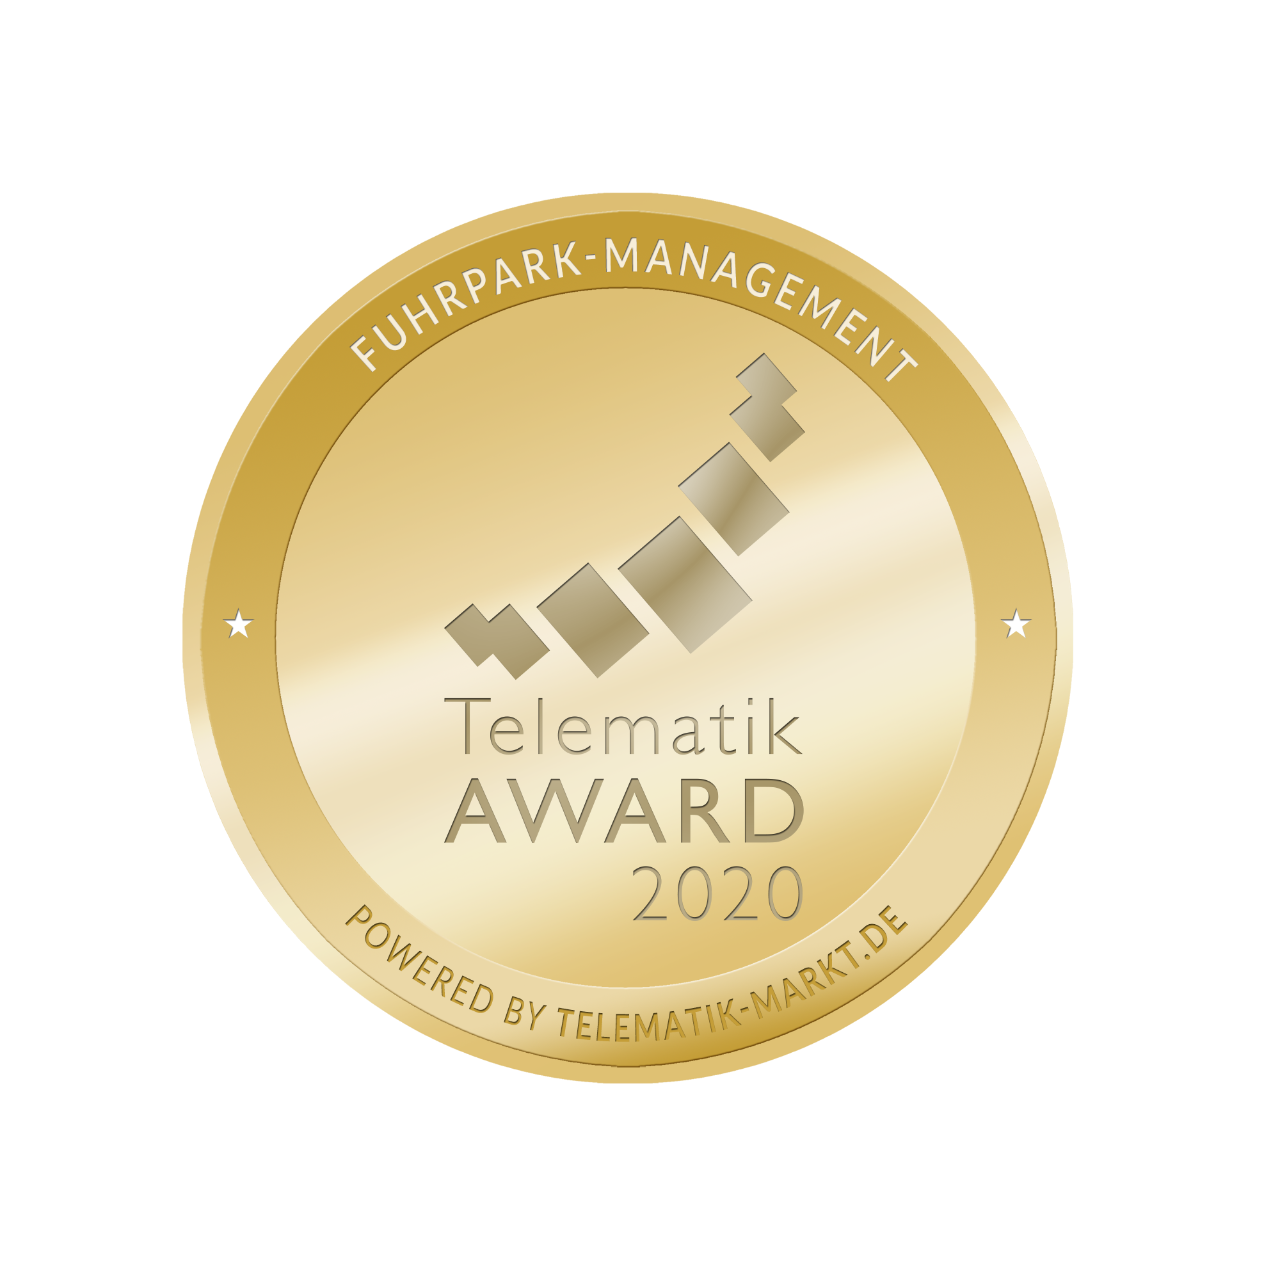 Telematik Award 2020